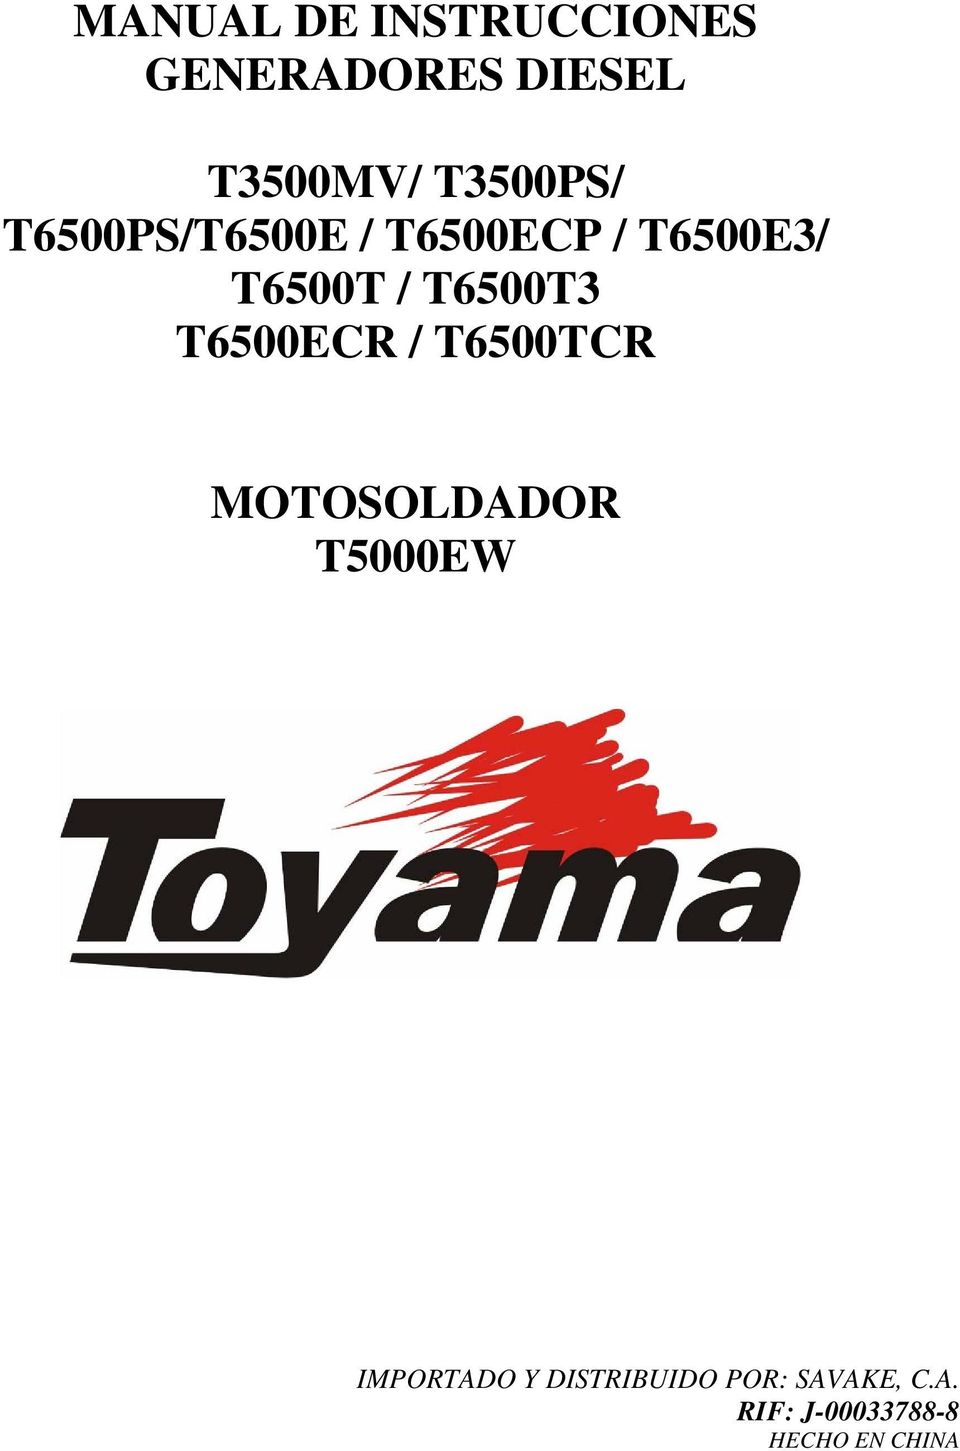 T6500T3 T6500ECR / T6500TCR MOTOSOLDADOR T5000EW